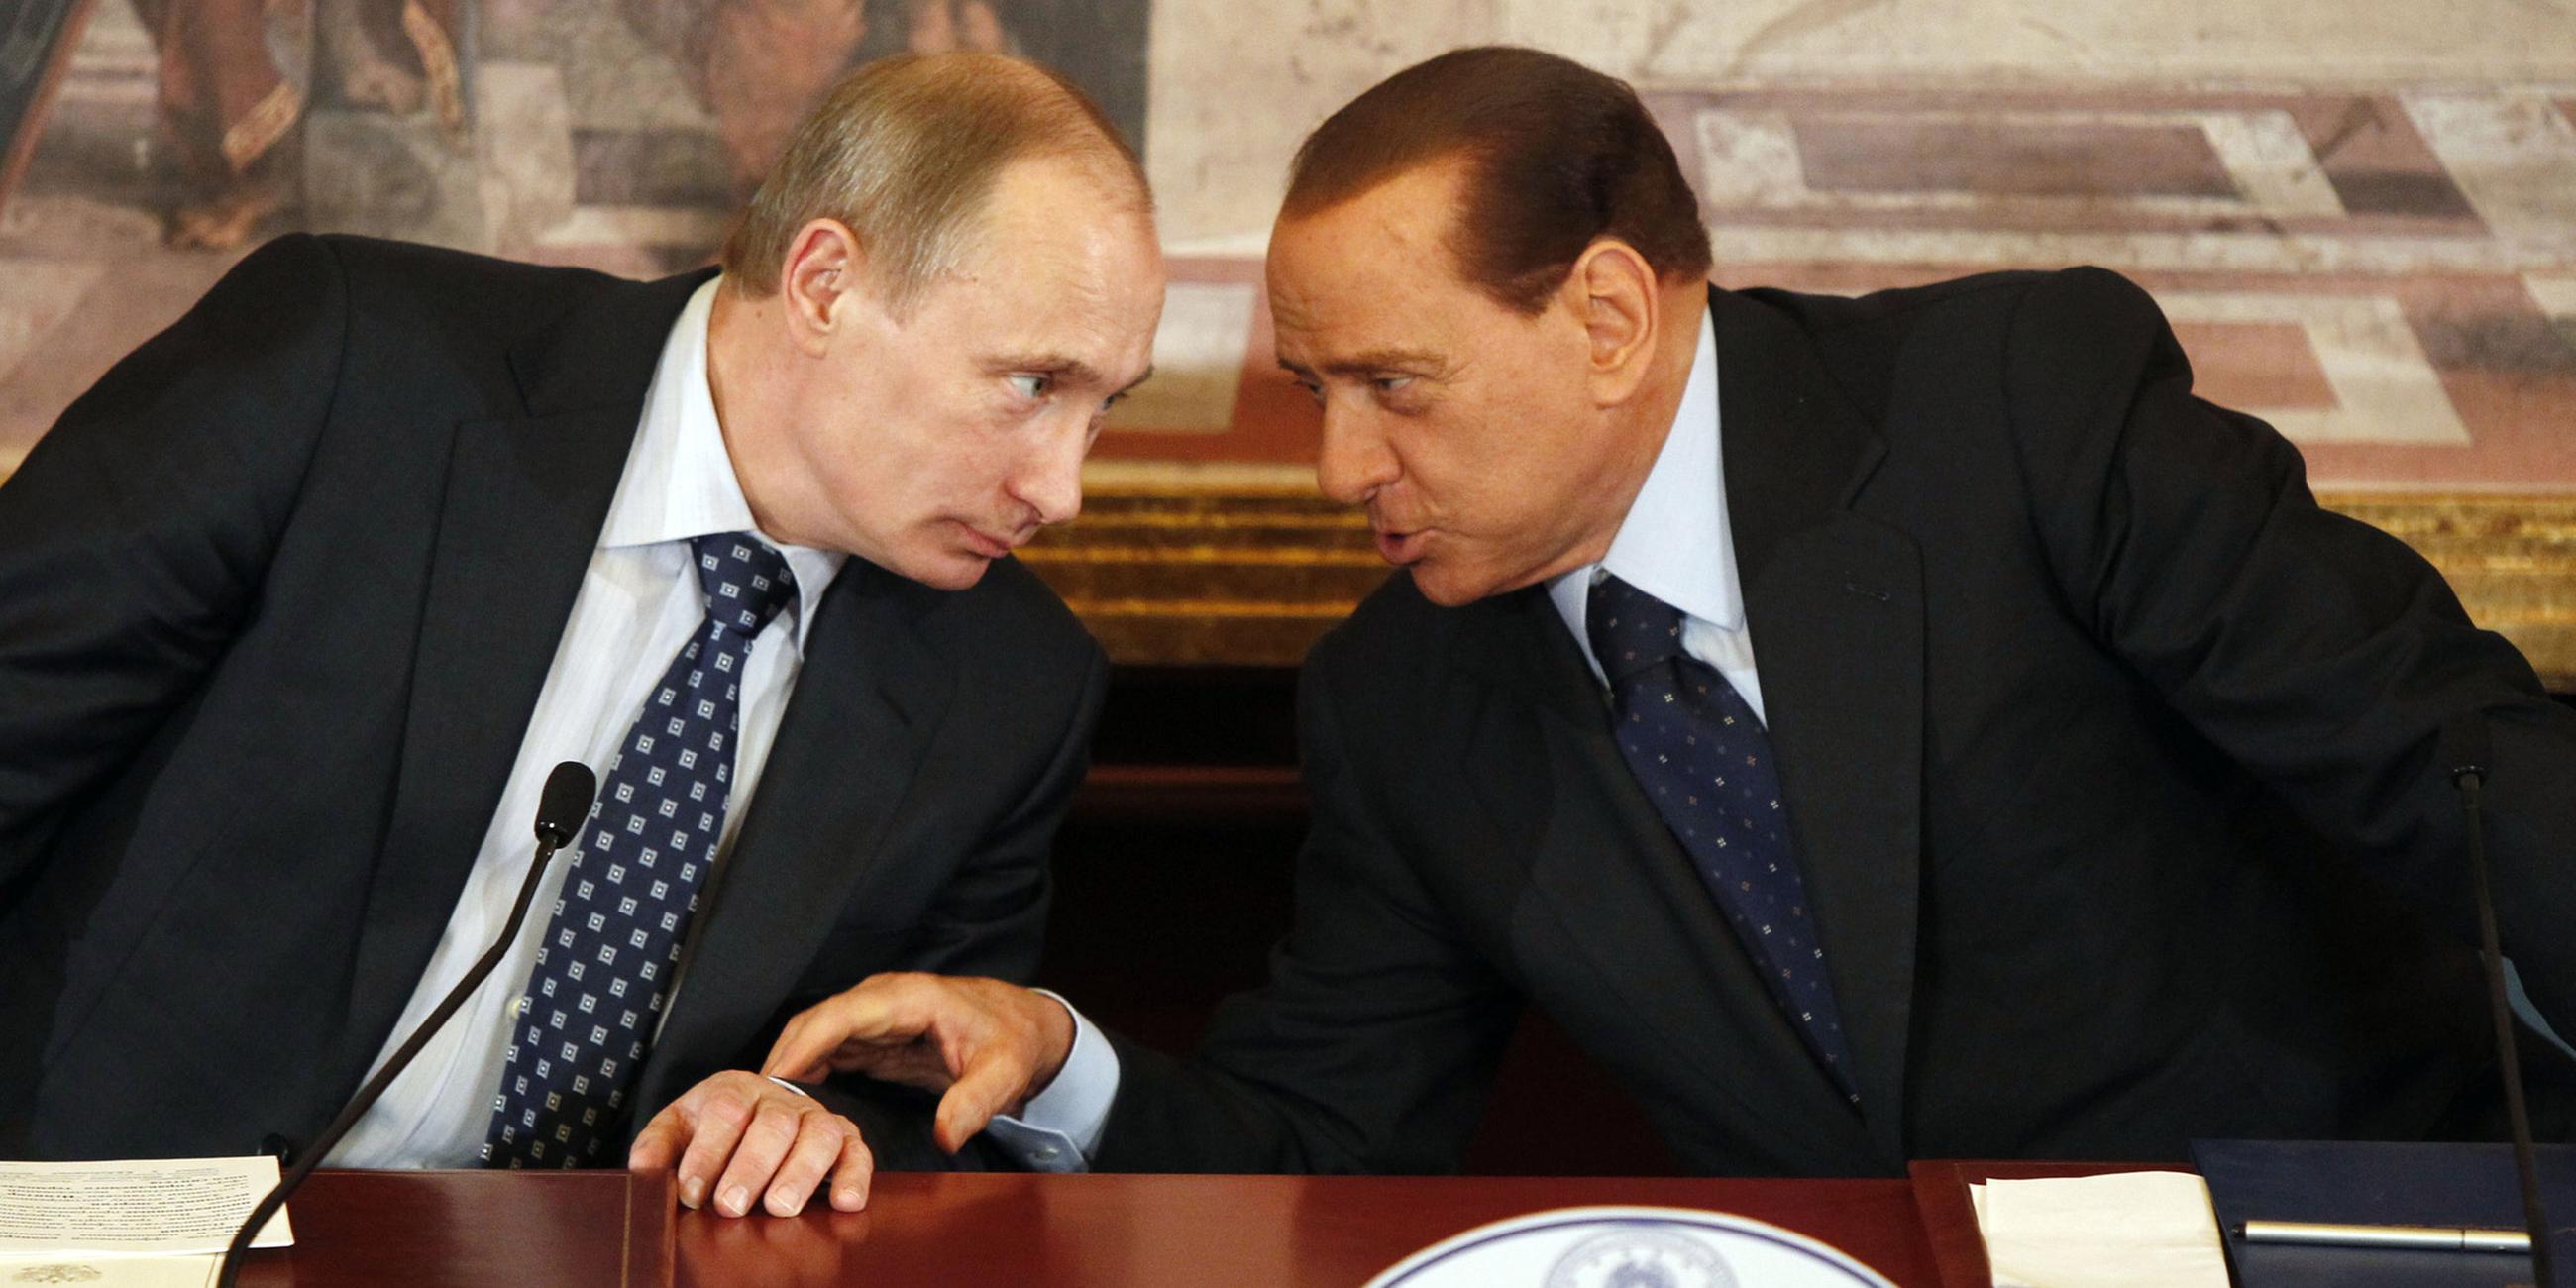 Archiv: Wladimir Putin (l)  und Silvio Berlusconi, aufgenommen am 26.04.2010